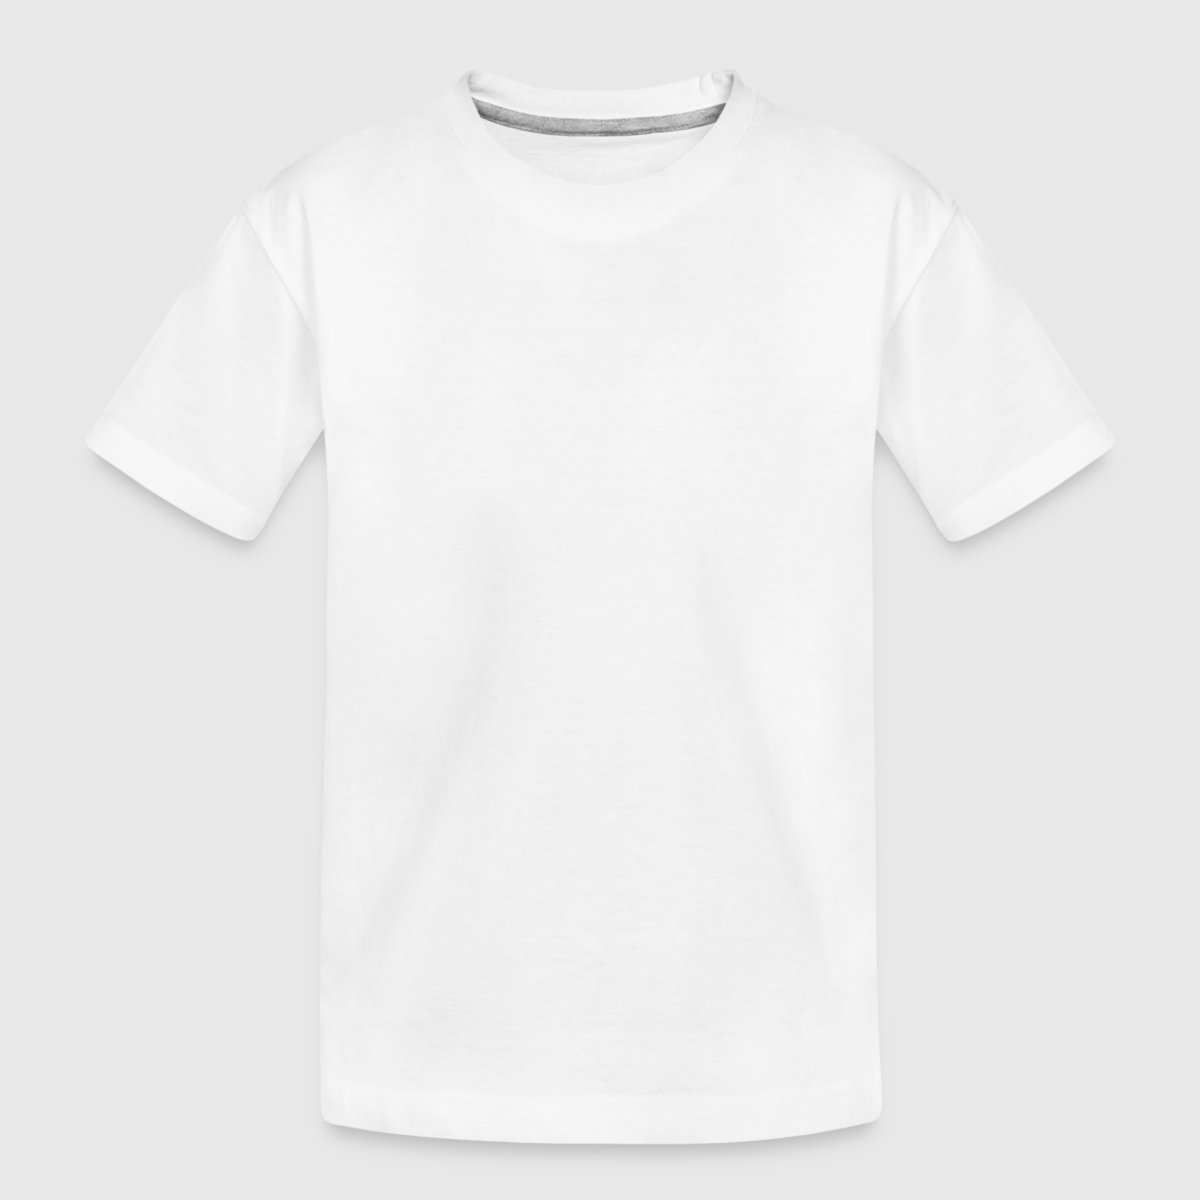 Kinder Premium Bio T-Shirt - Vorne